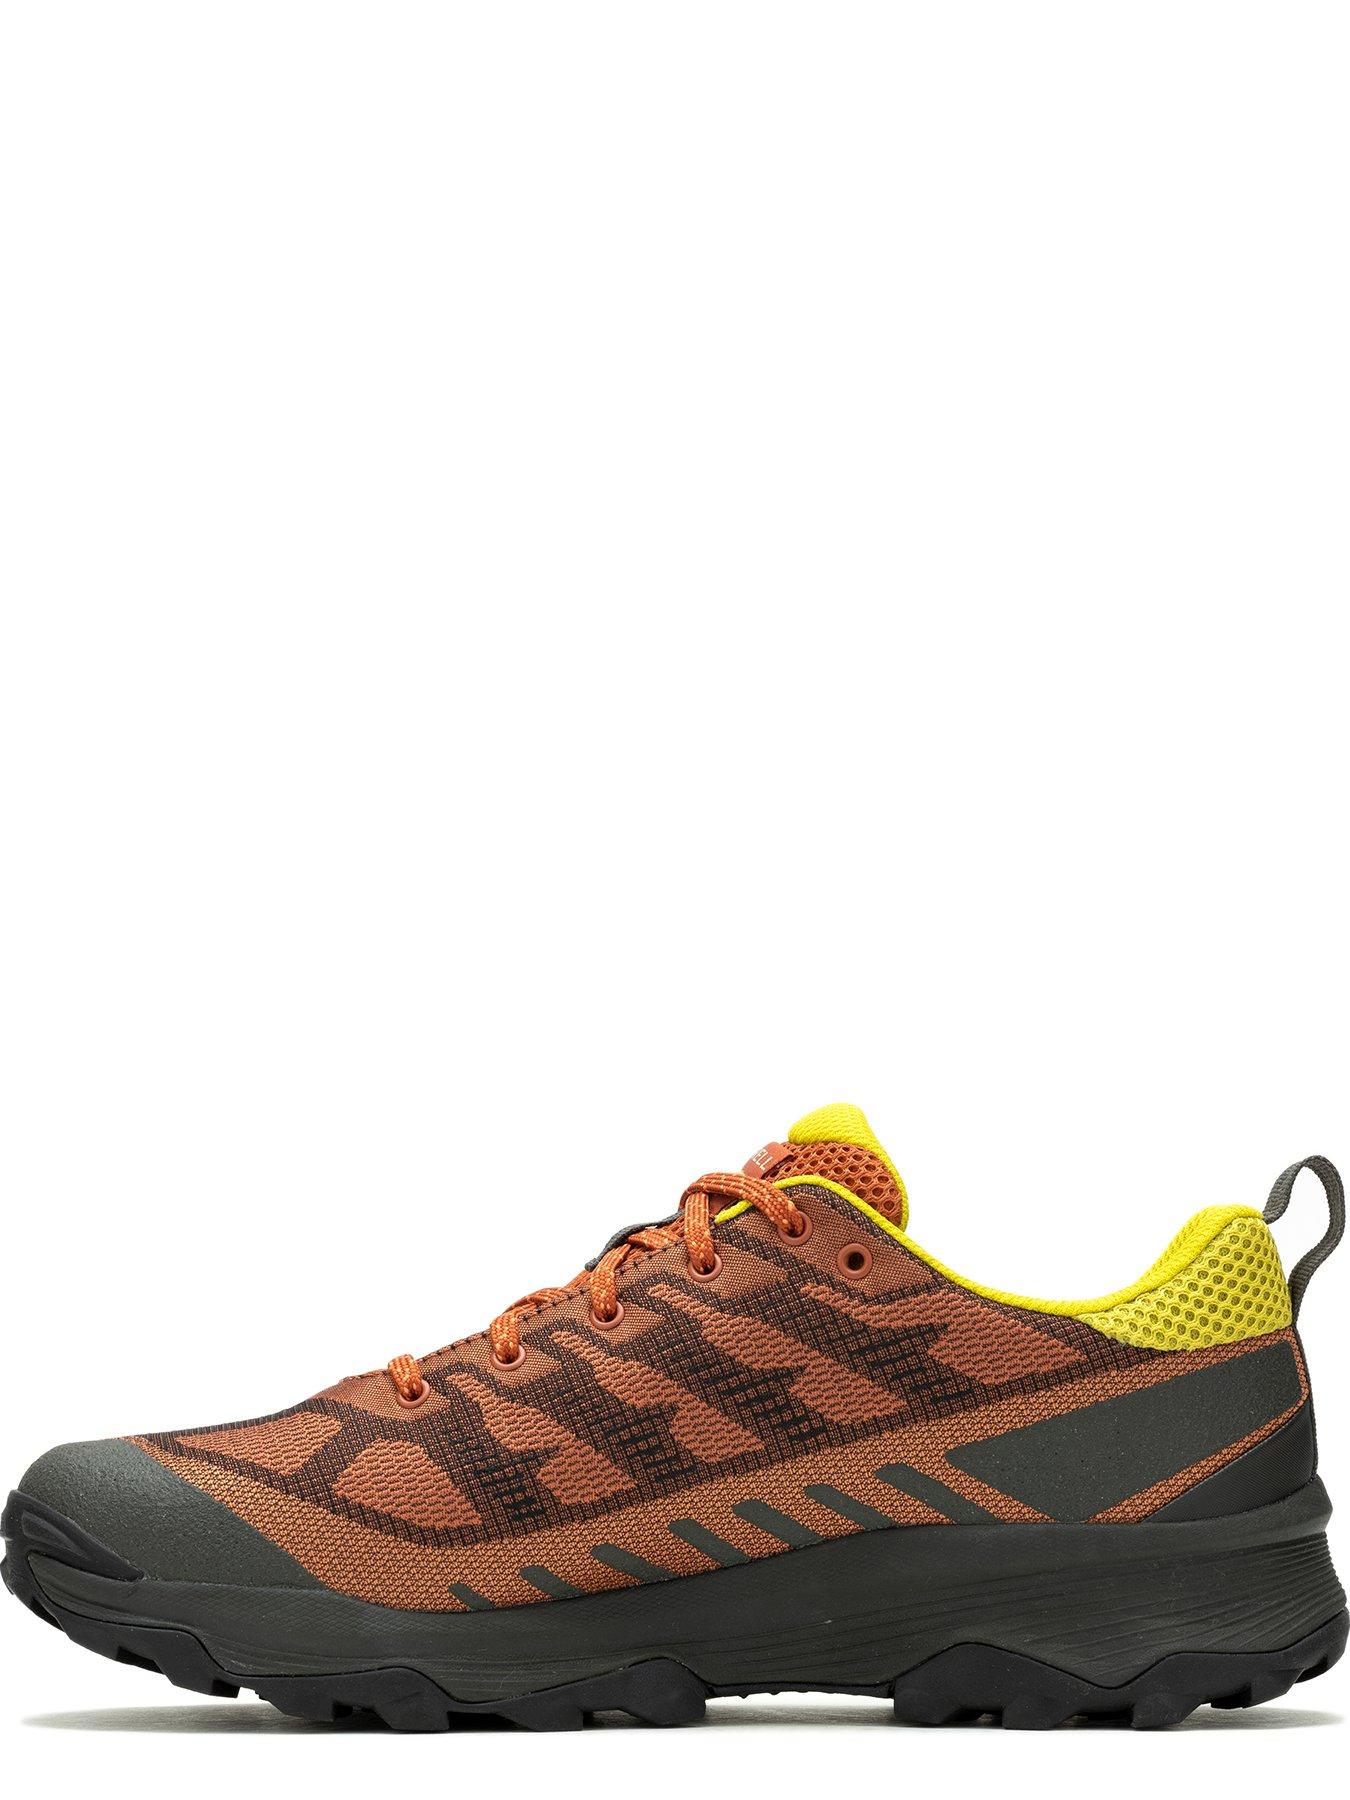 Merrell Mens Speed Waterproof Hiking Shoes - Orange | Very.co.uk